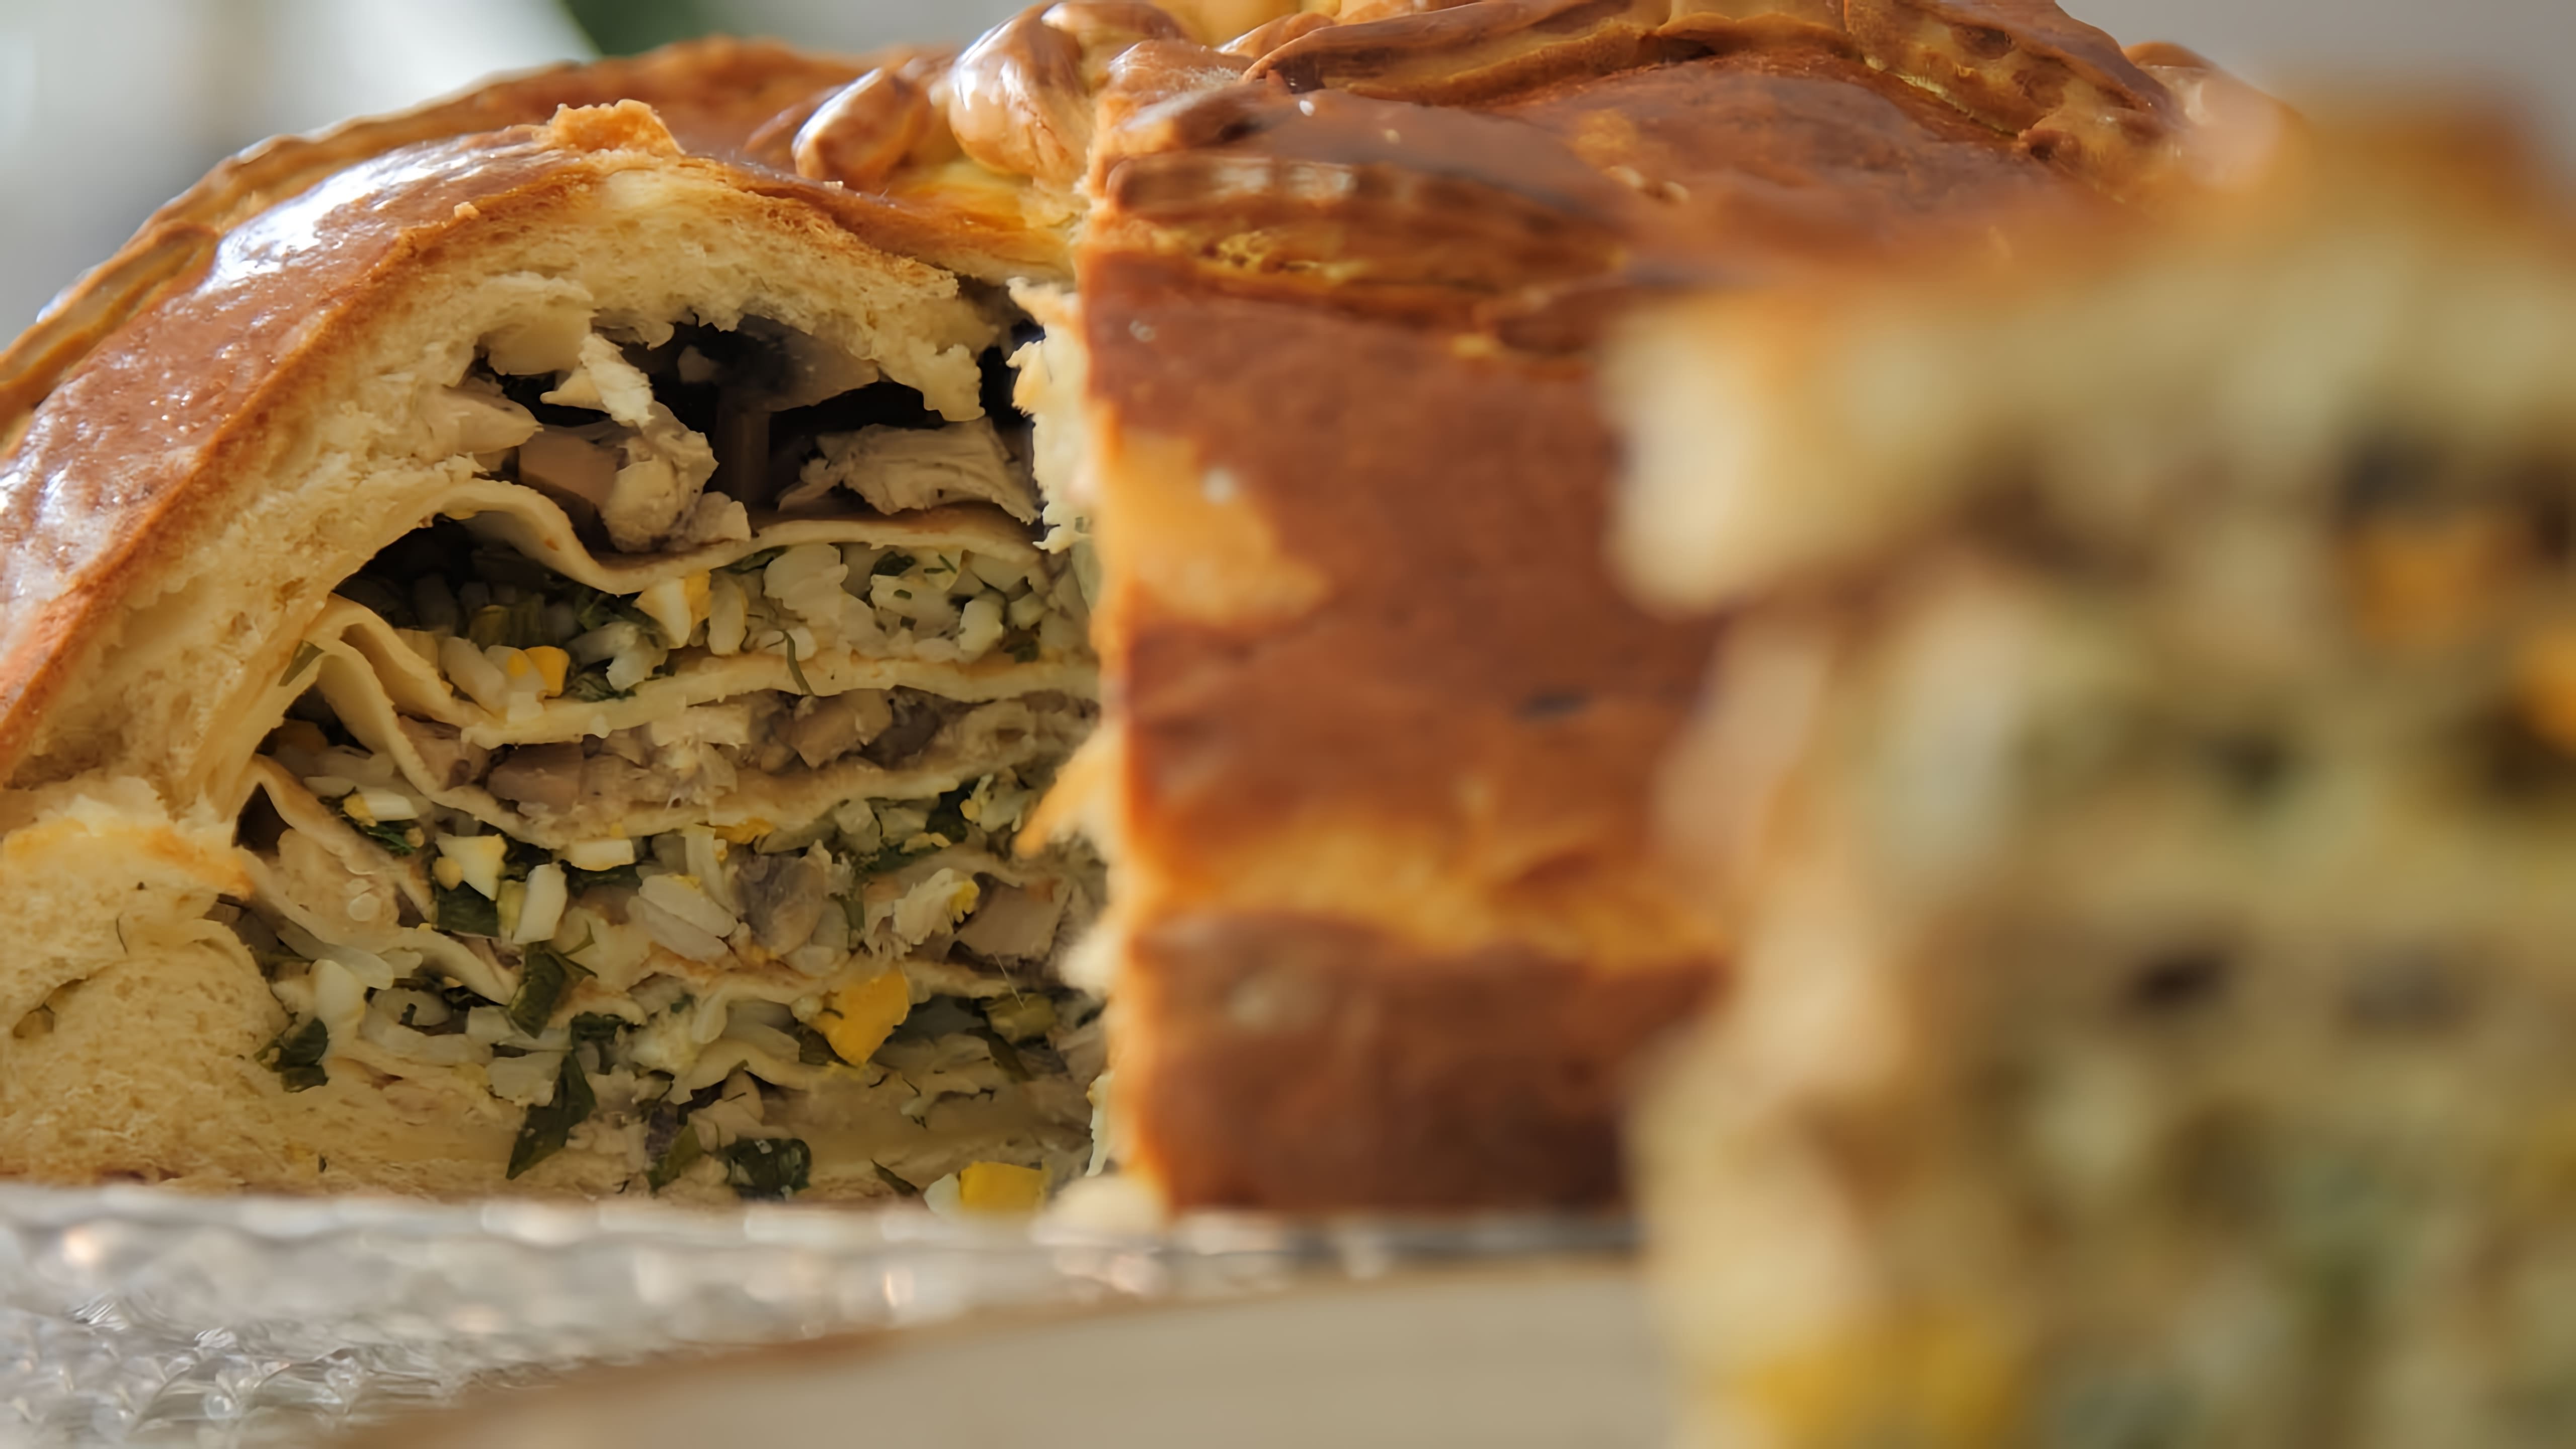 Видео рецепт традиционного русского праздничного пирога под названием курник, который содержит курицу и грибы